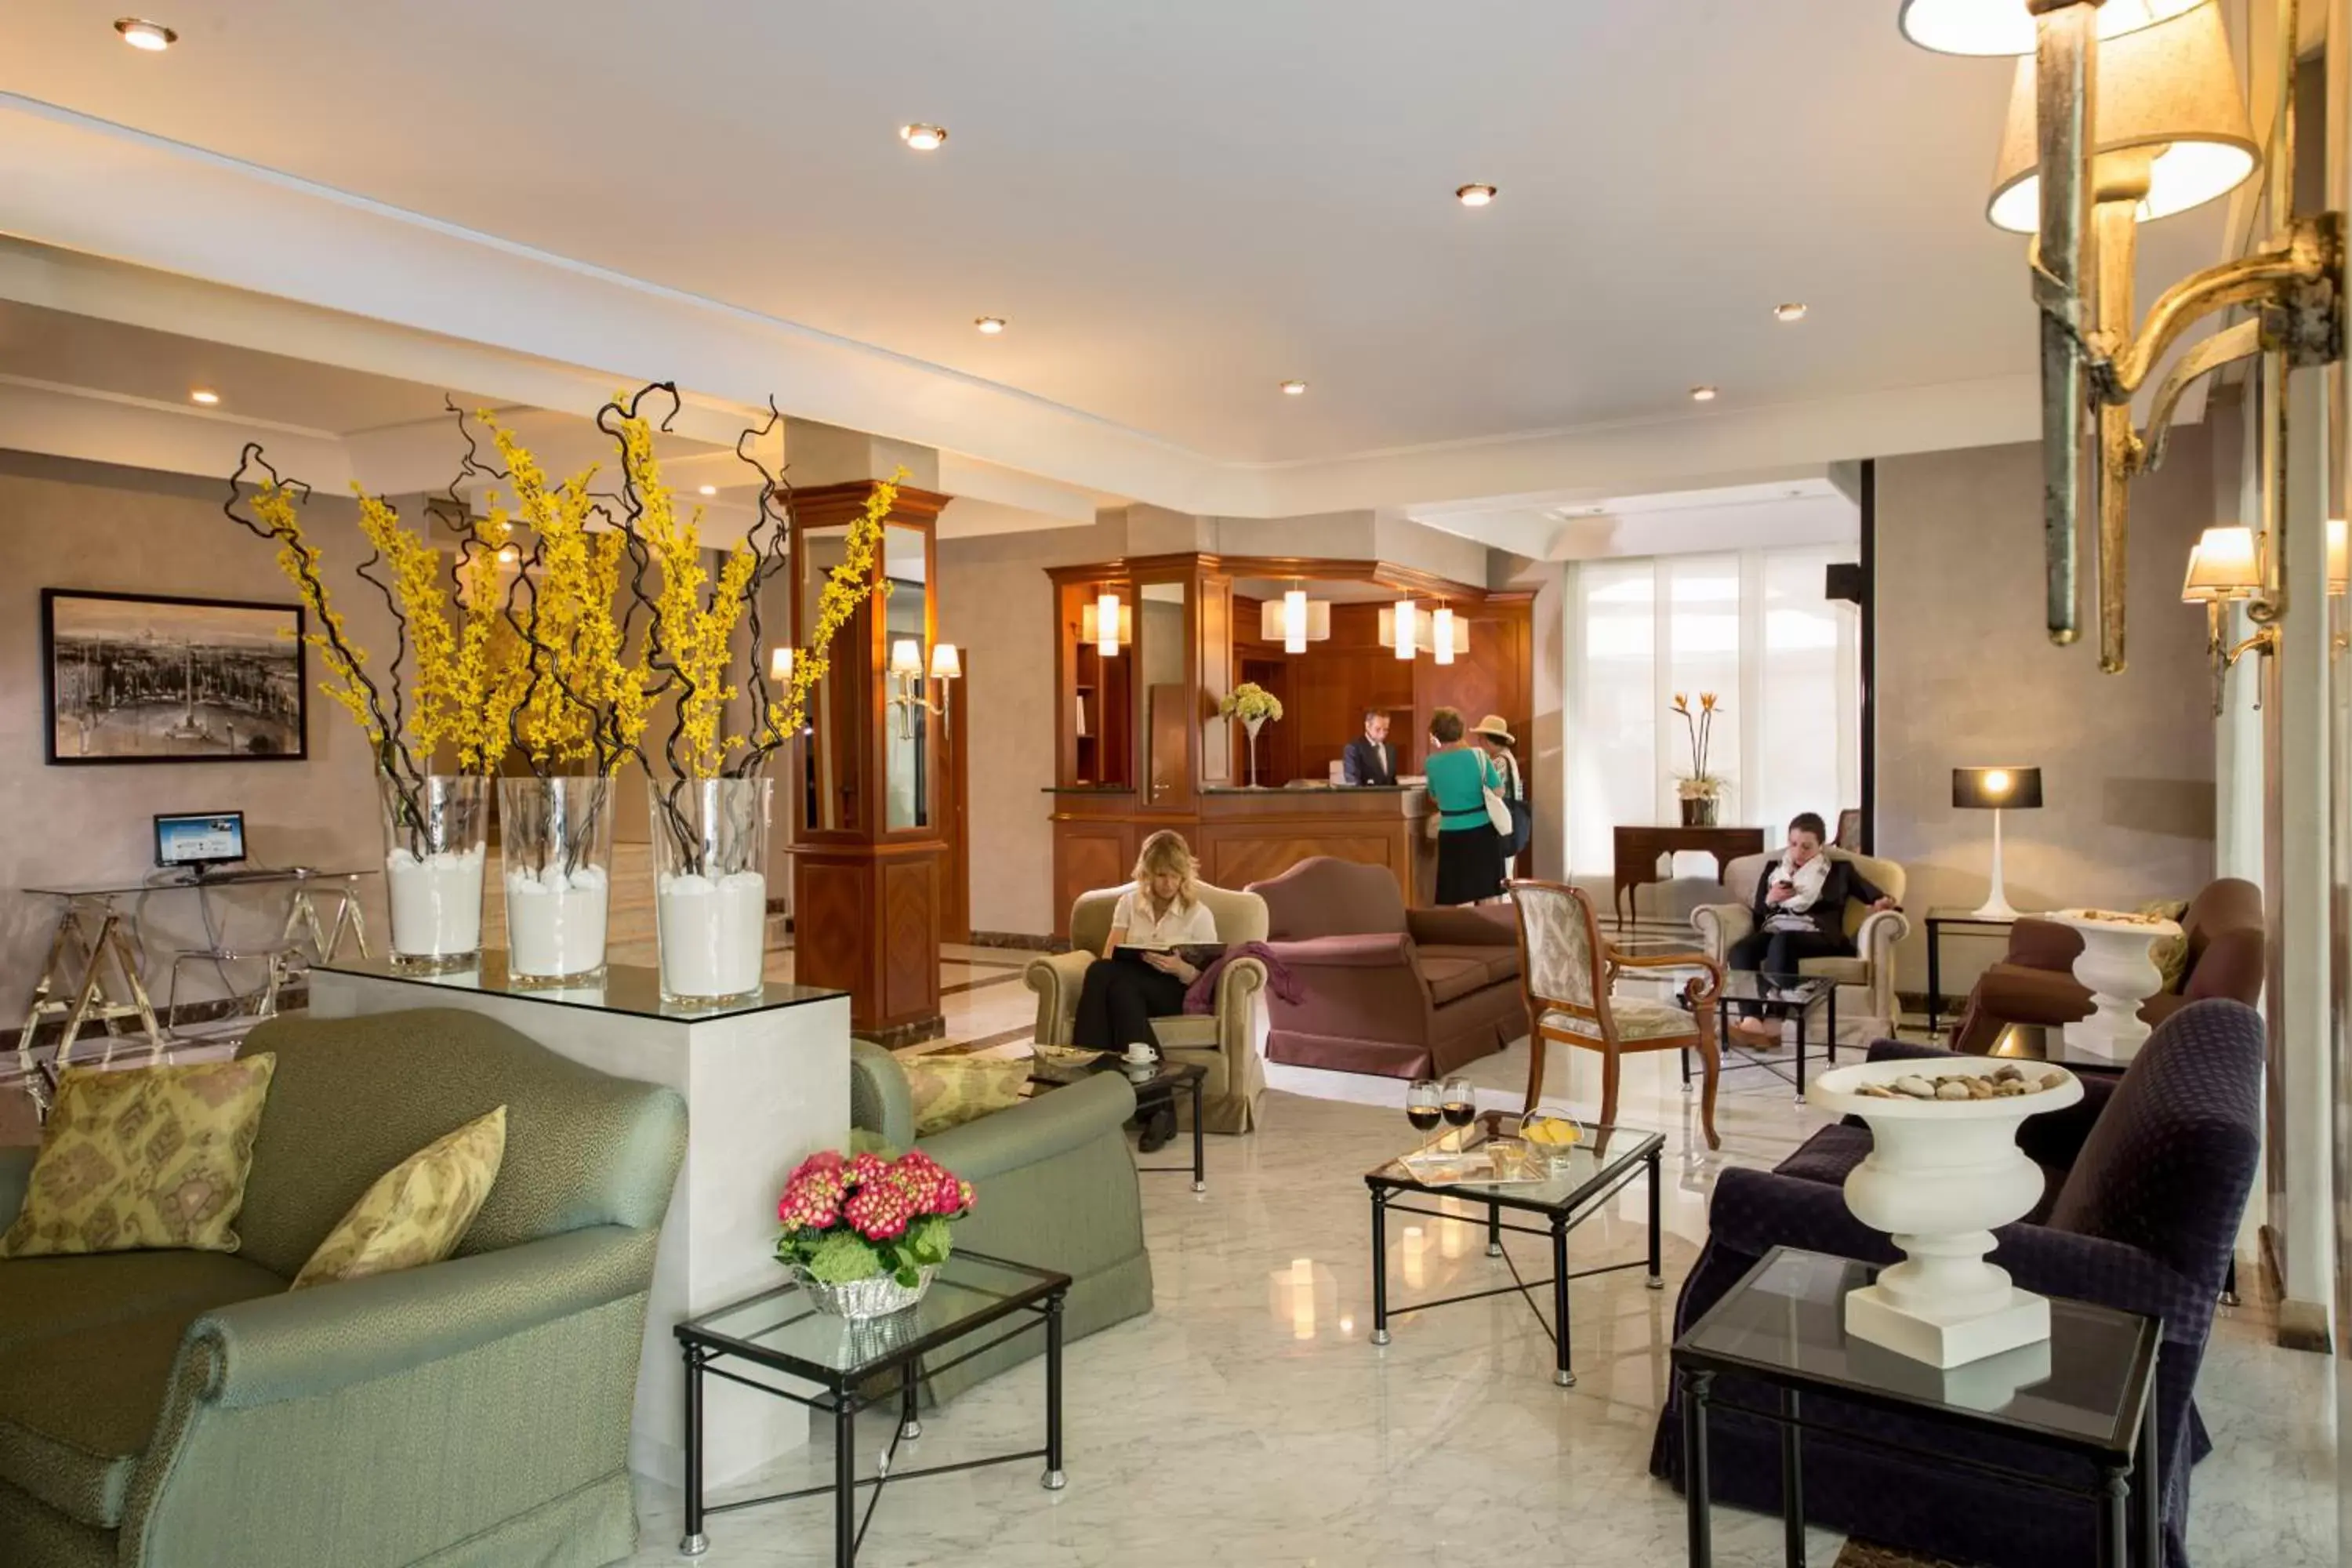 Lobby or reception, Lobby/Reception in Hotel Santa Costanza by OMNIA hotels